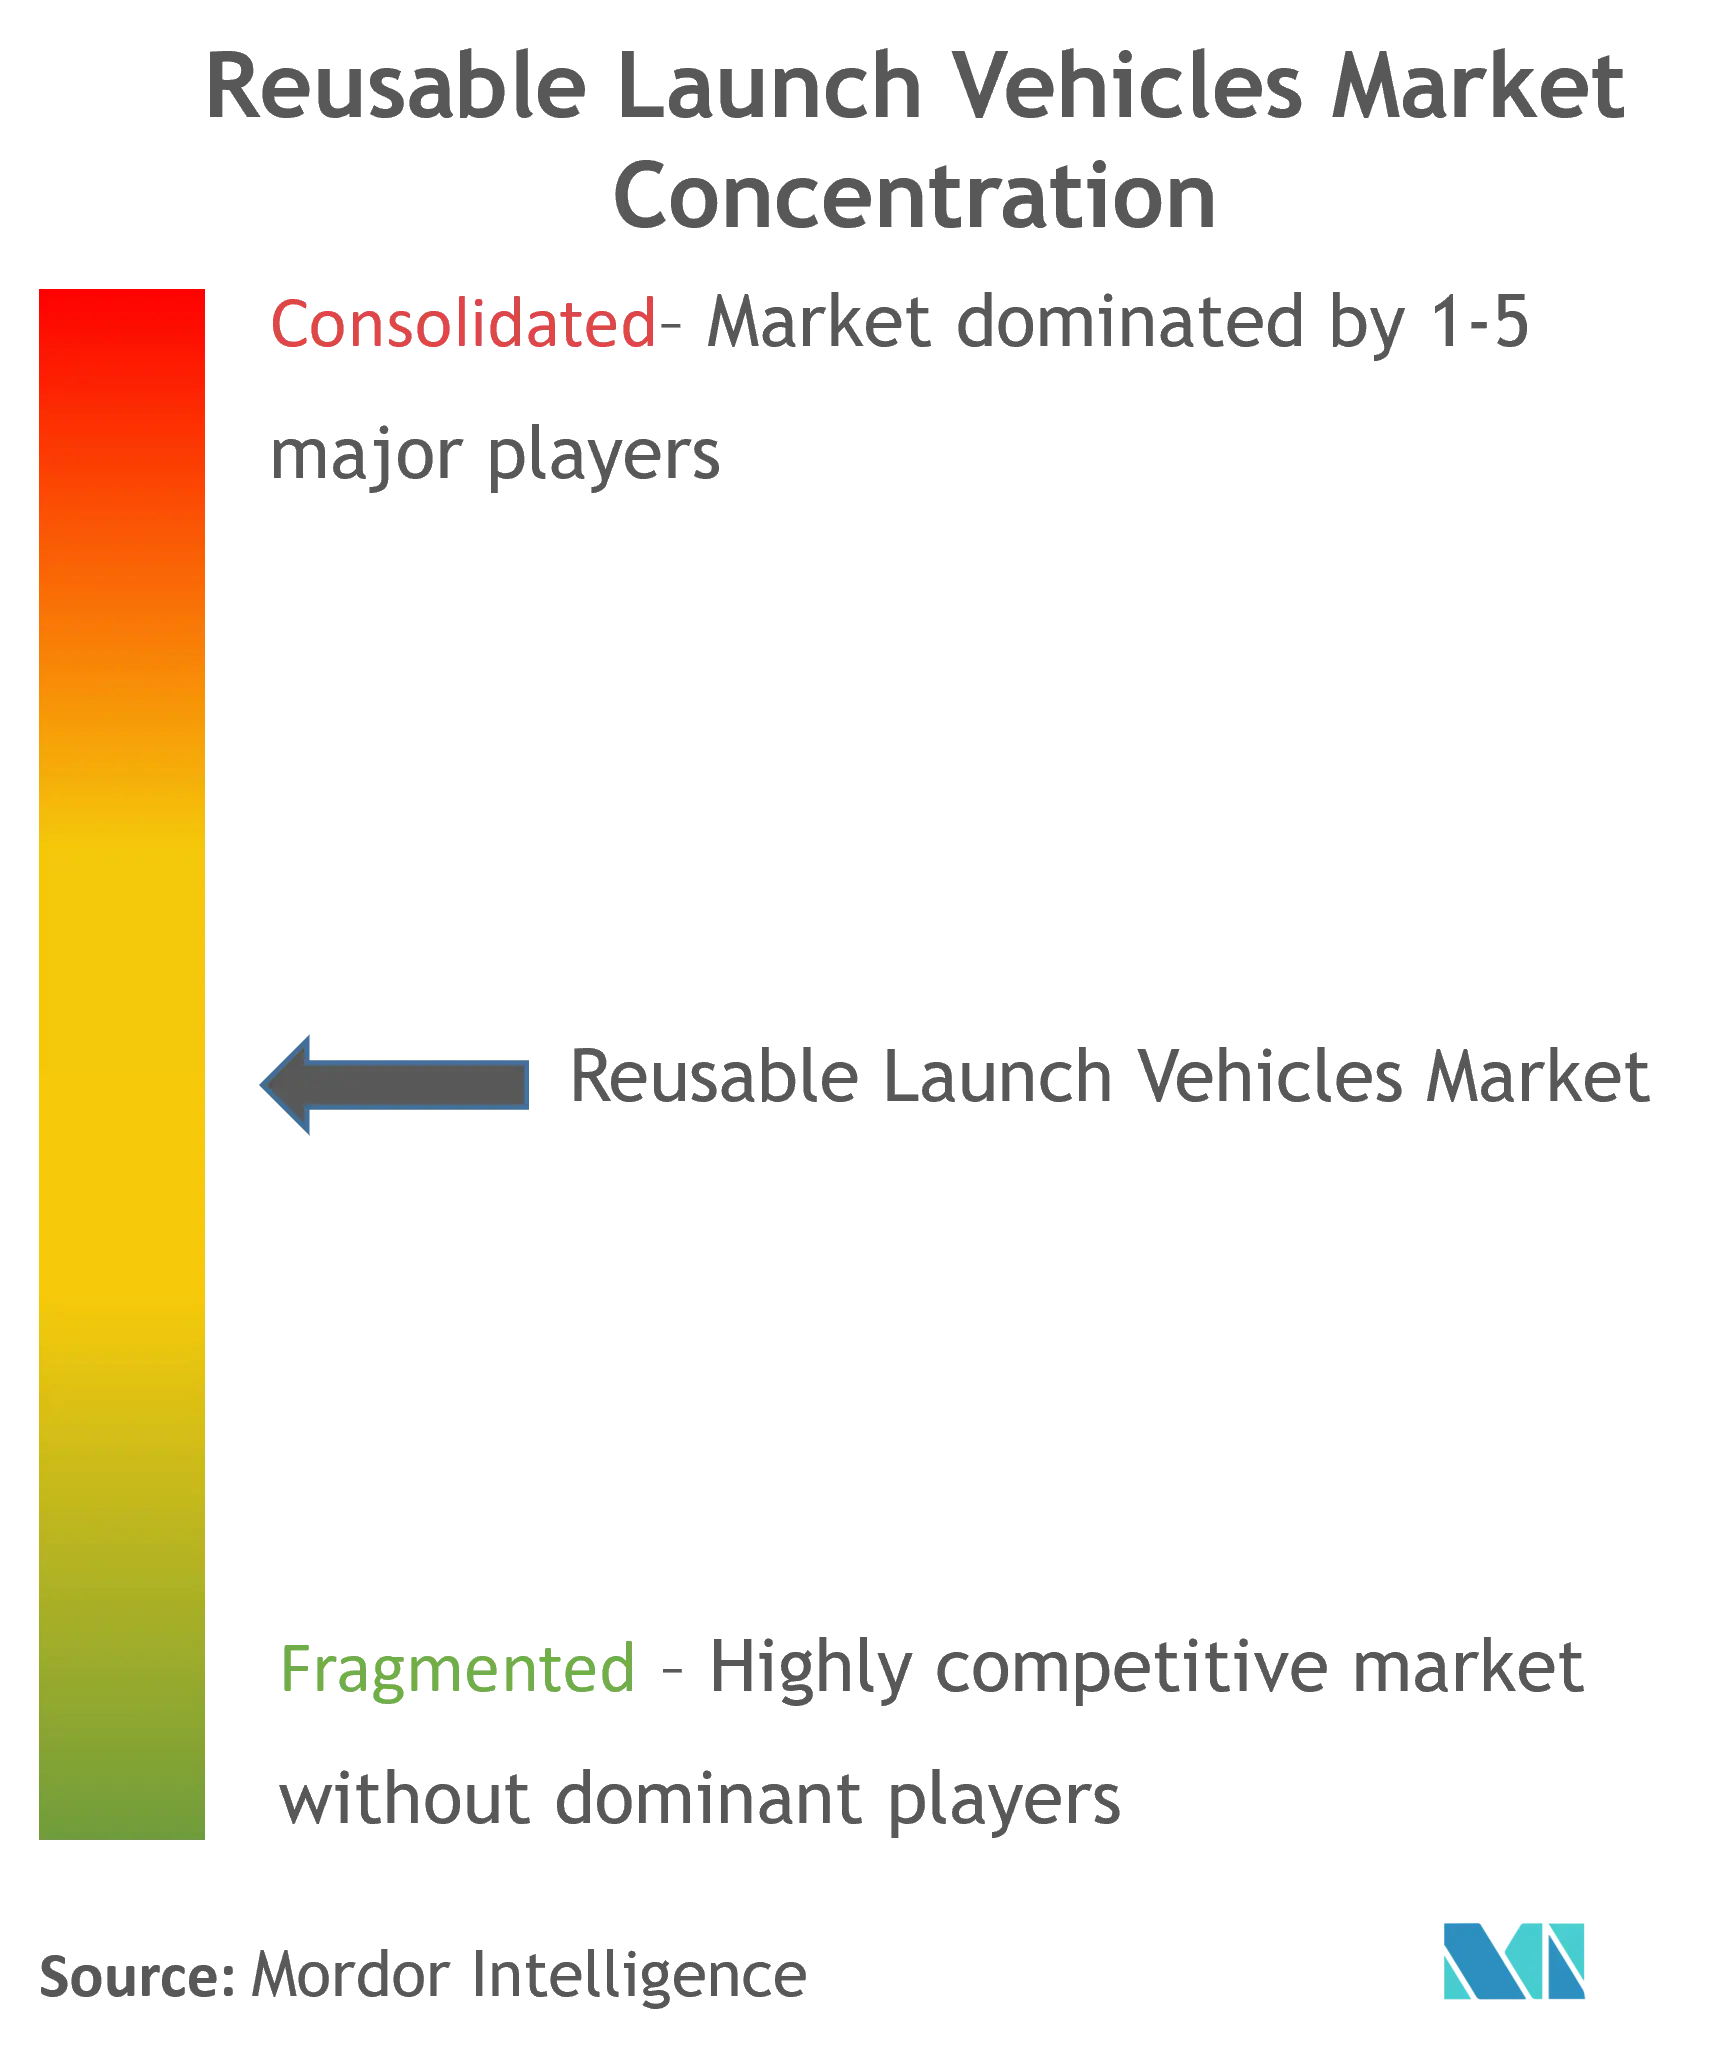 Reusable Launch Vehicles Market Concentration